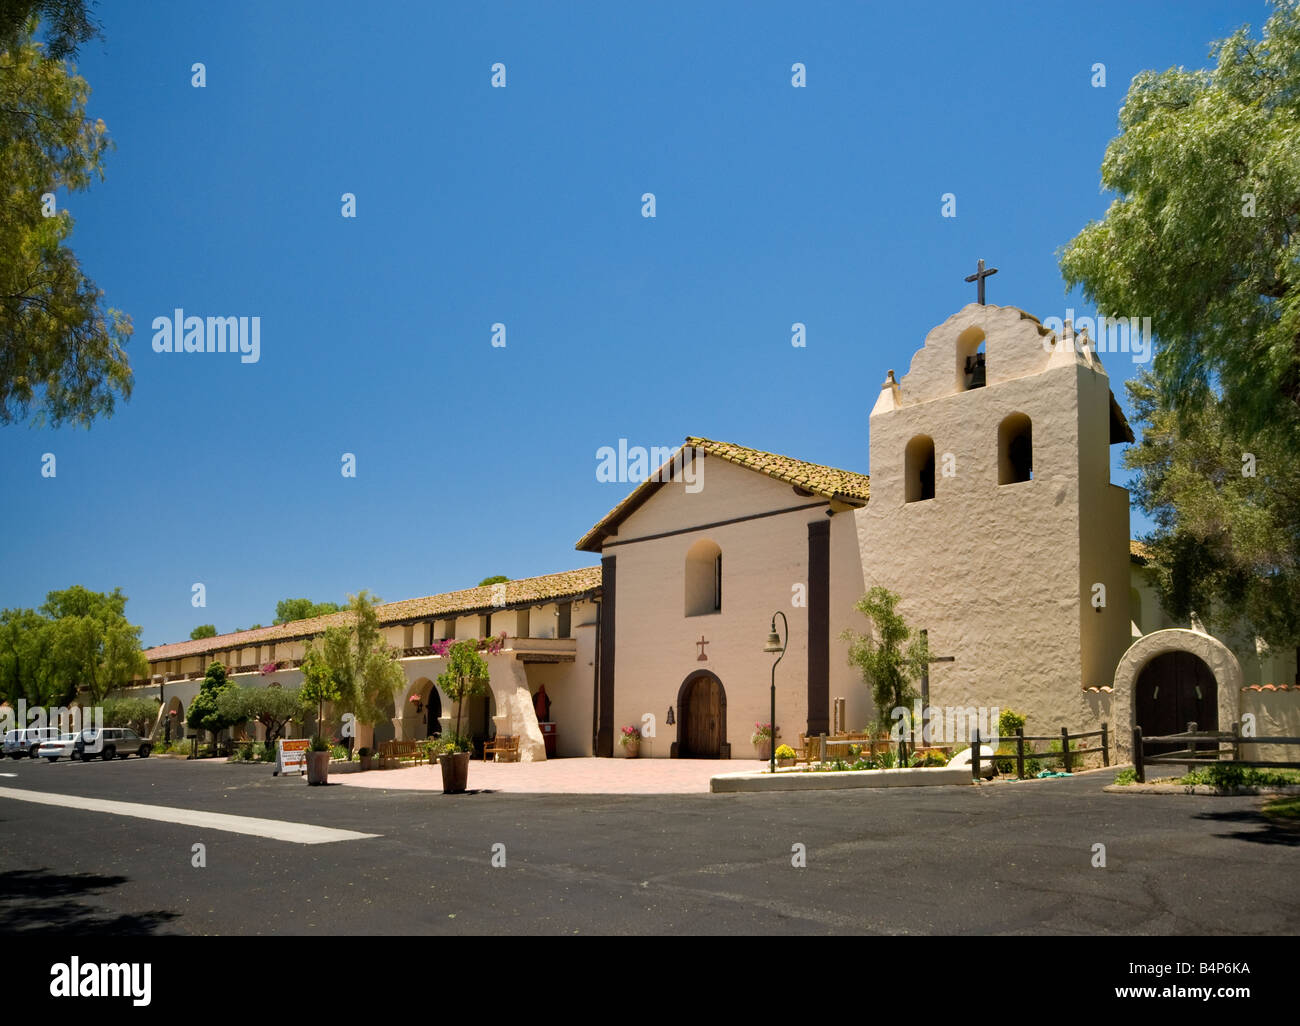 Façade de l'église et clocher à Mission Santa Ines près de Solvang California USA Banque D'Images